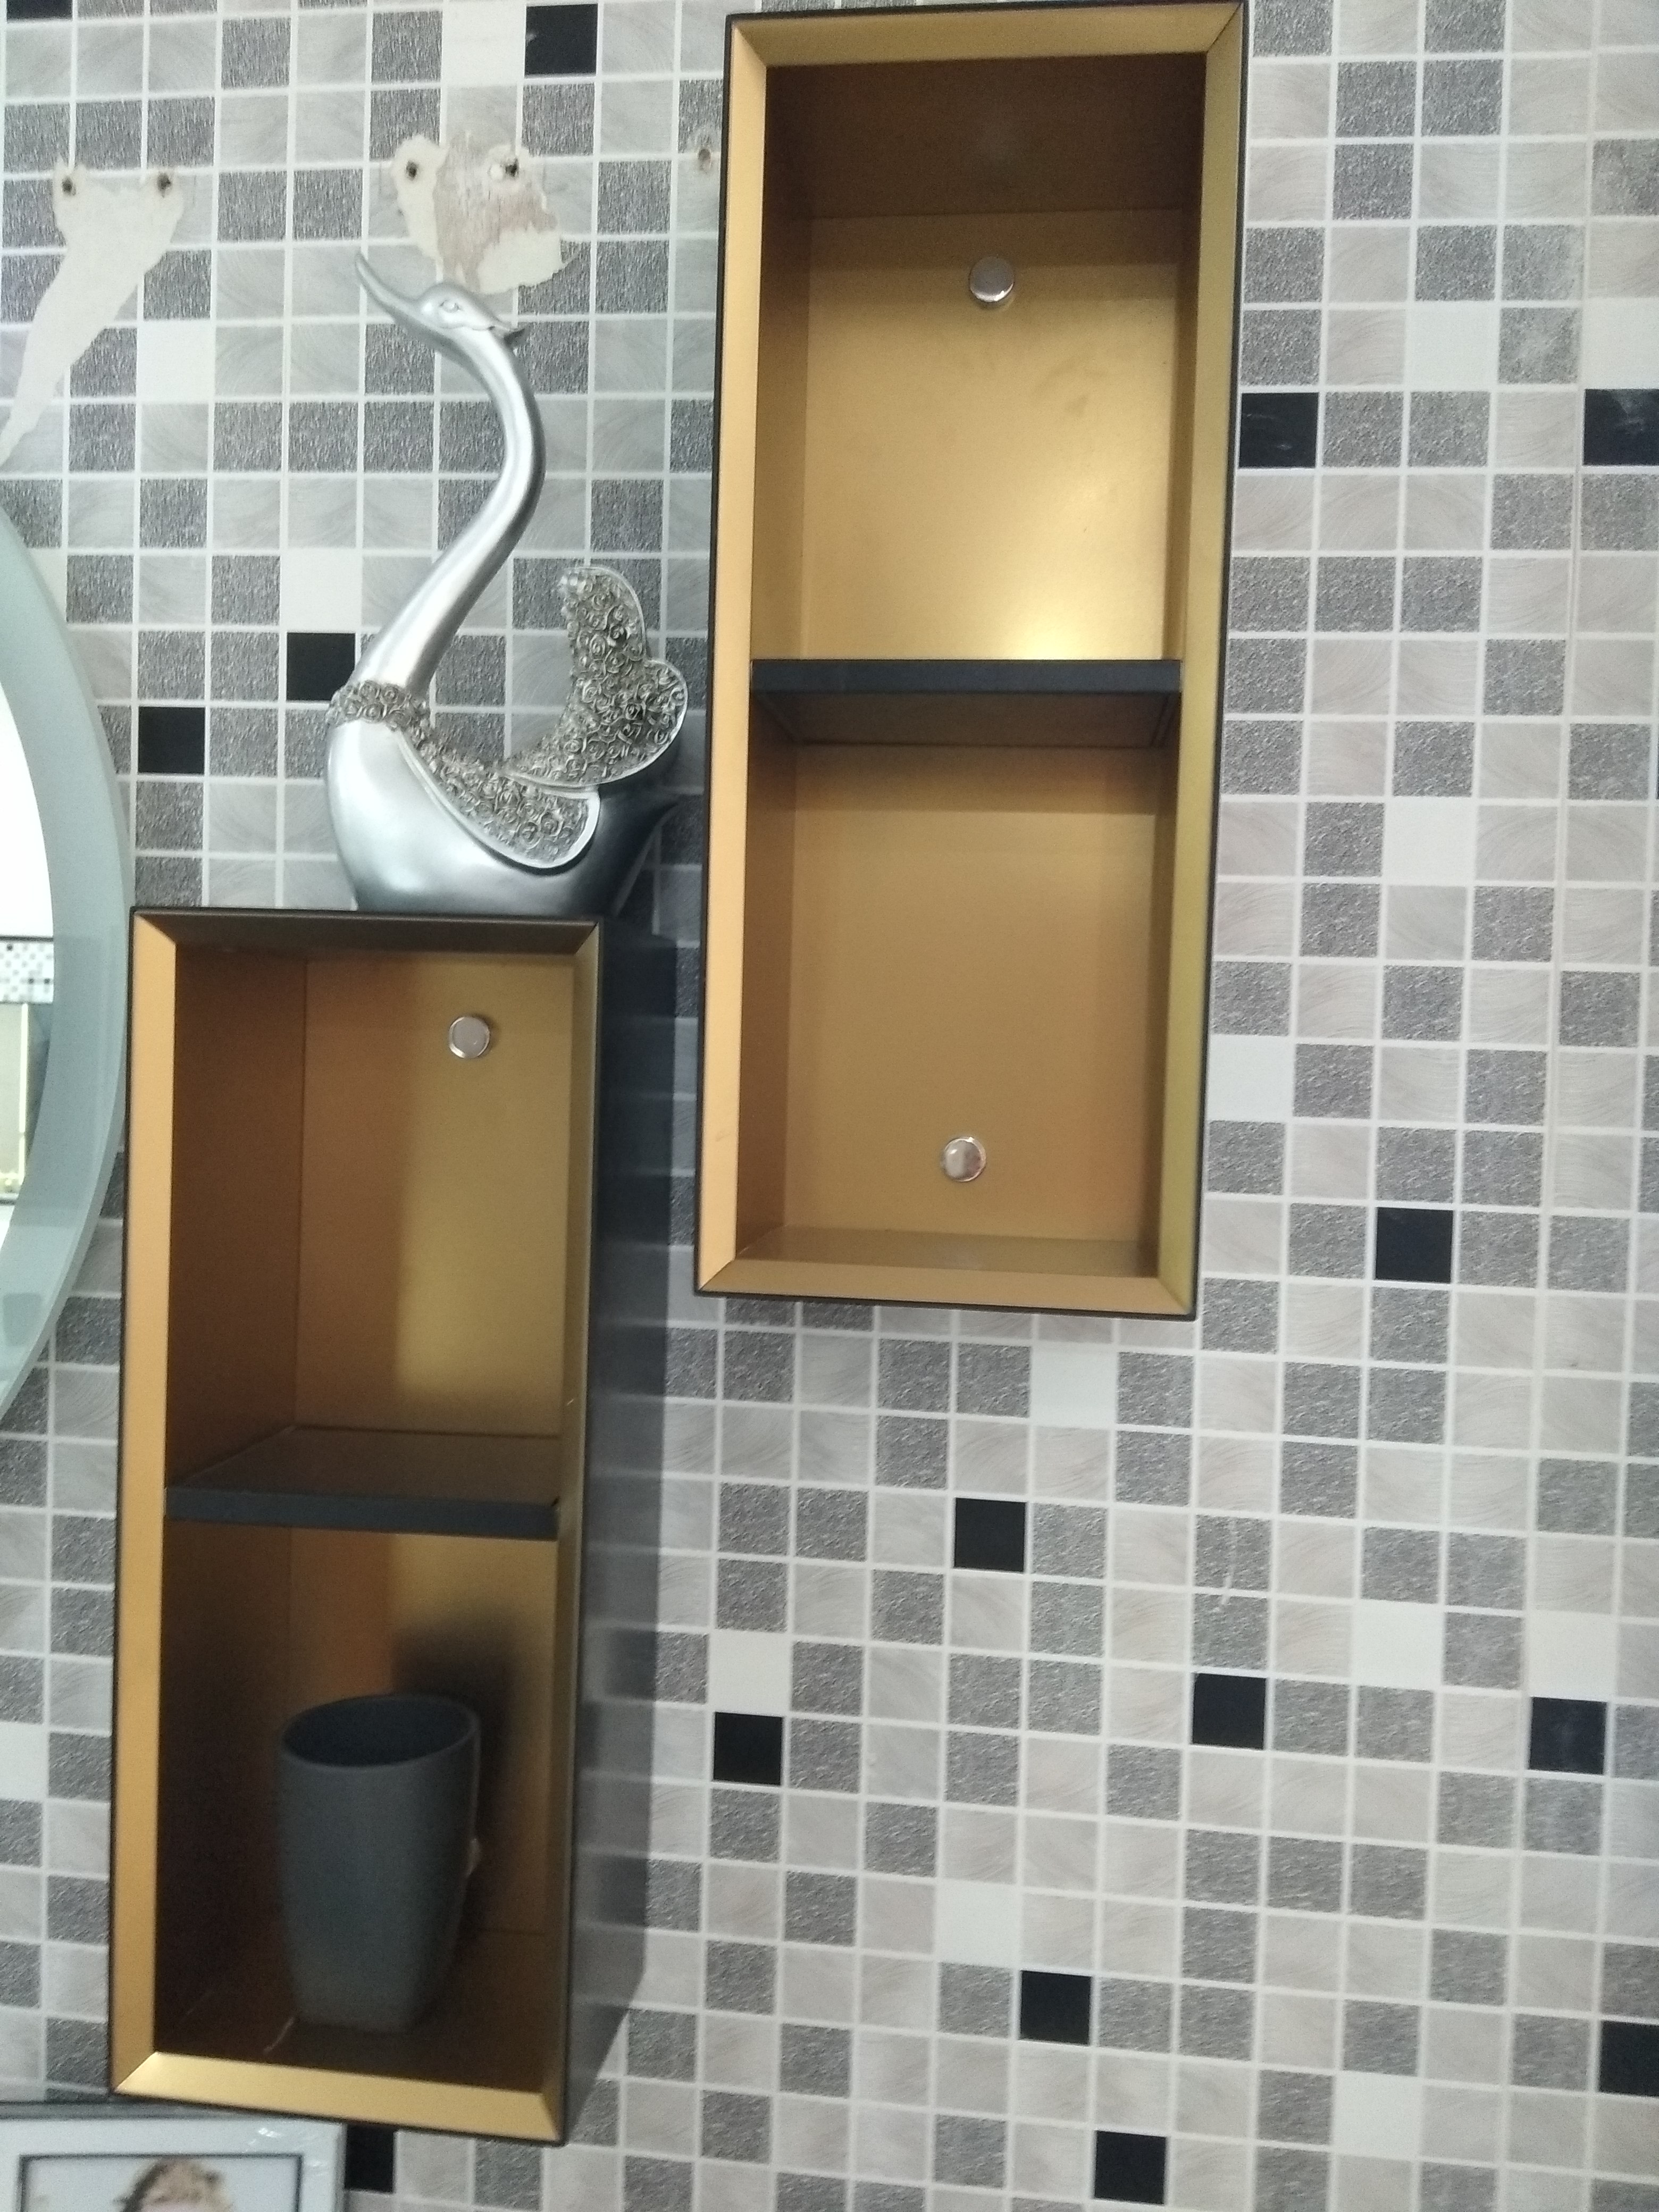 주문 측면 캐비닛이 있는 방수 욕실 거울,측면 캐비닛이 있는 방수 욕실 거울 가격,측면 캐비닛이 있는 방수 욕실 거울 브랜드,측면 캐비닛이 있는 방수 욕실 거울 제조업체,측면 캐비닛이 있는 방수 욕실 거울 인용,측면 캐비닛이 있는 방수 욕실 거울 회사,